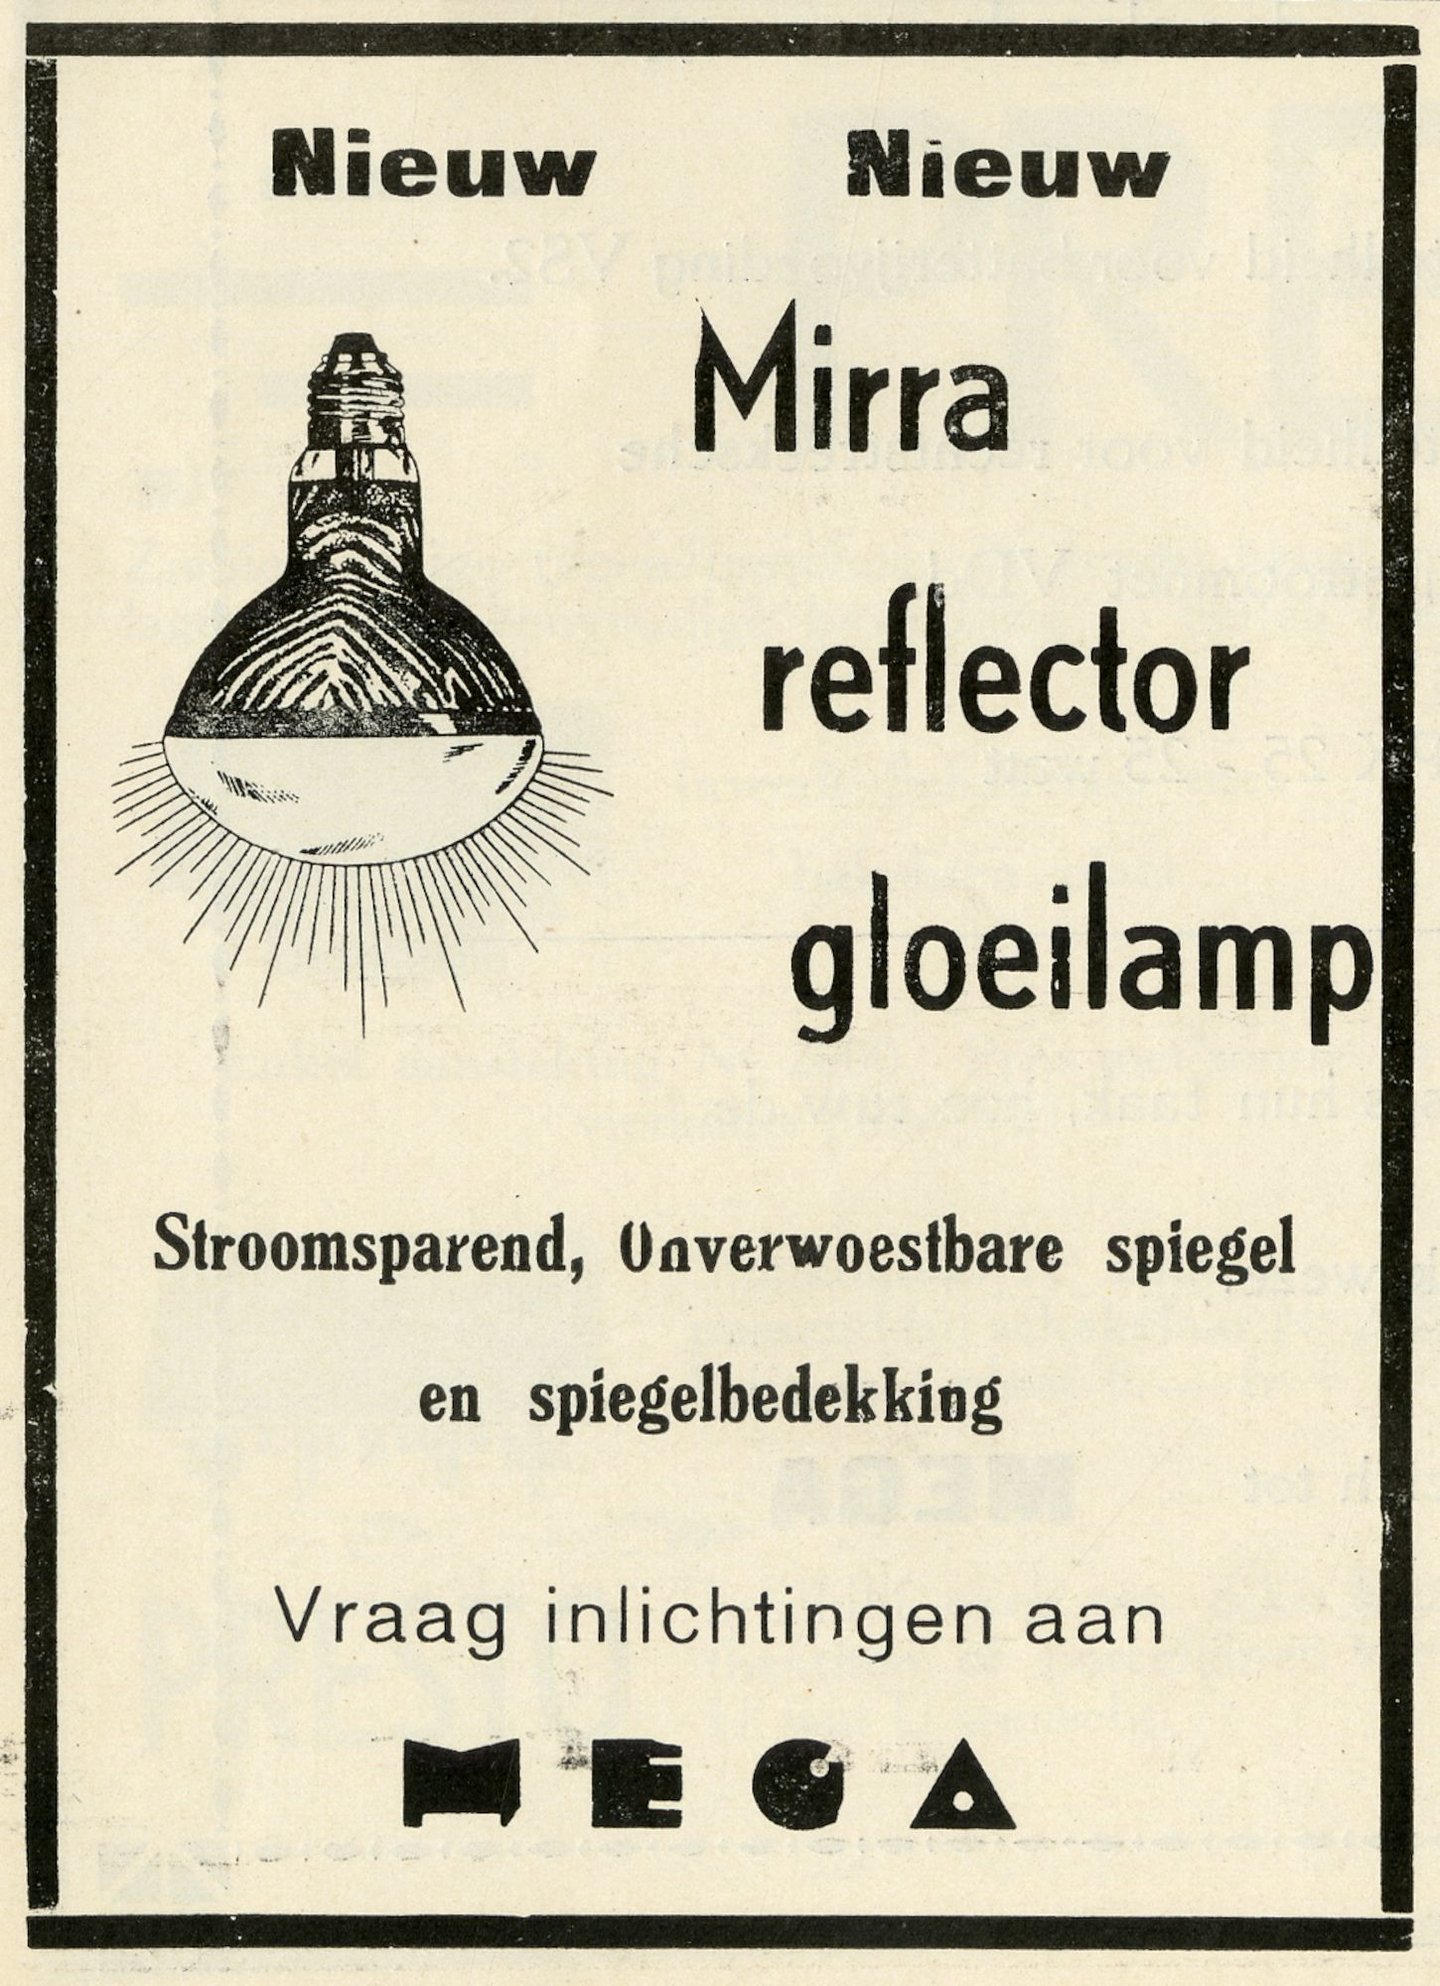 Reclame voor Mirra reflector gloeilampen